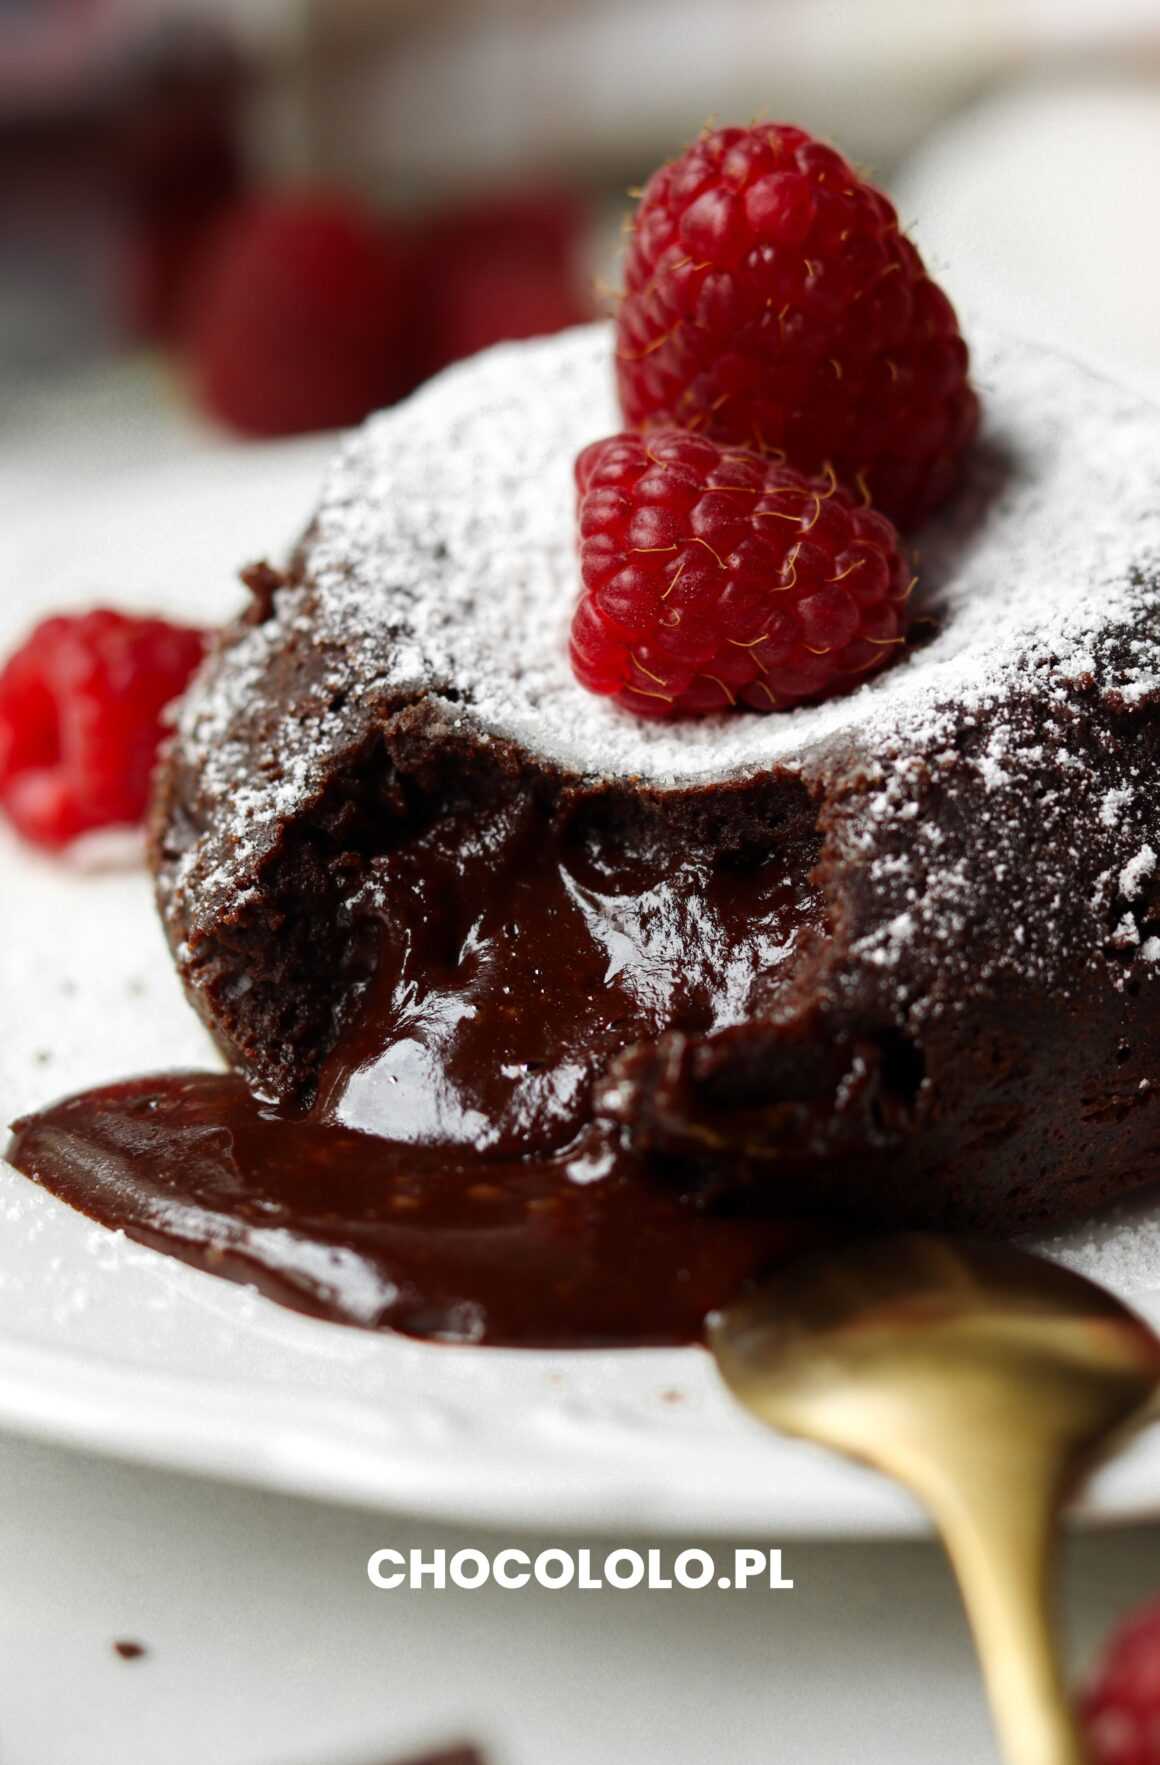 lava cake, czyli fondant czekoladowy